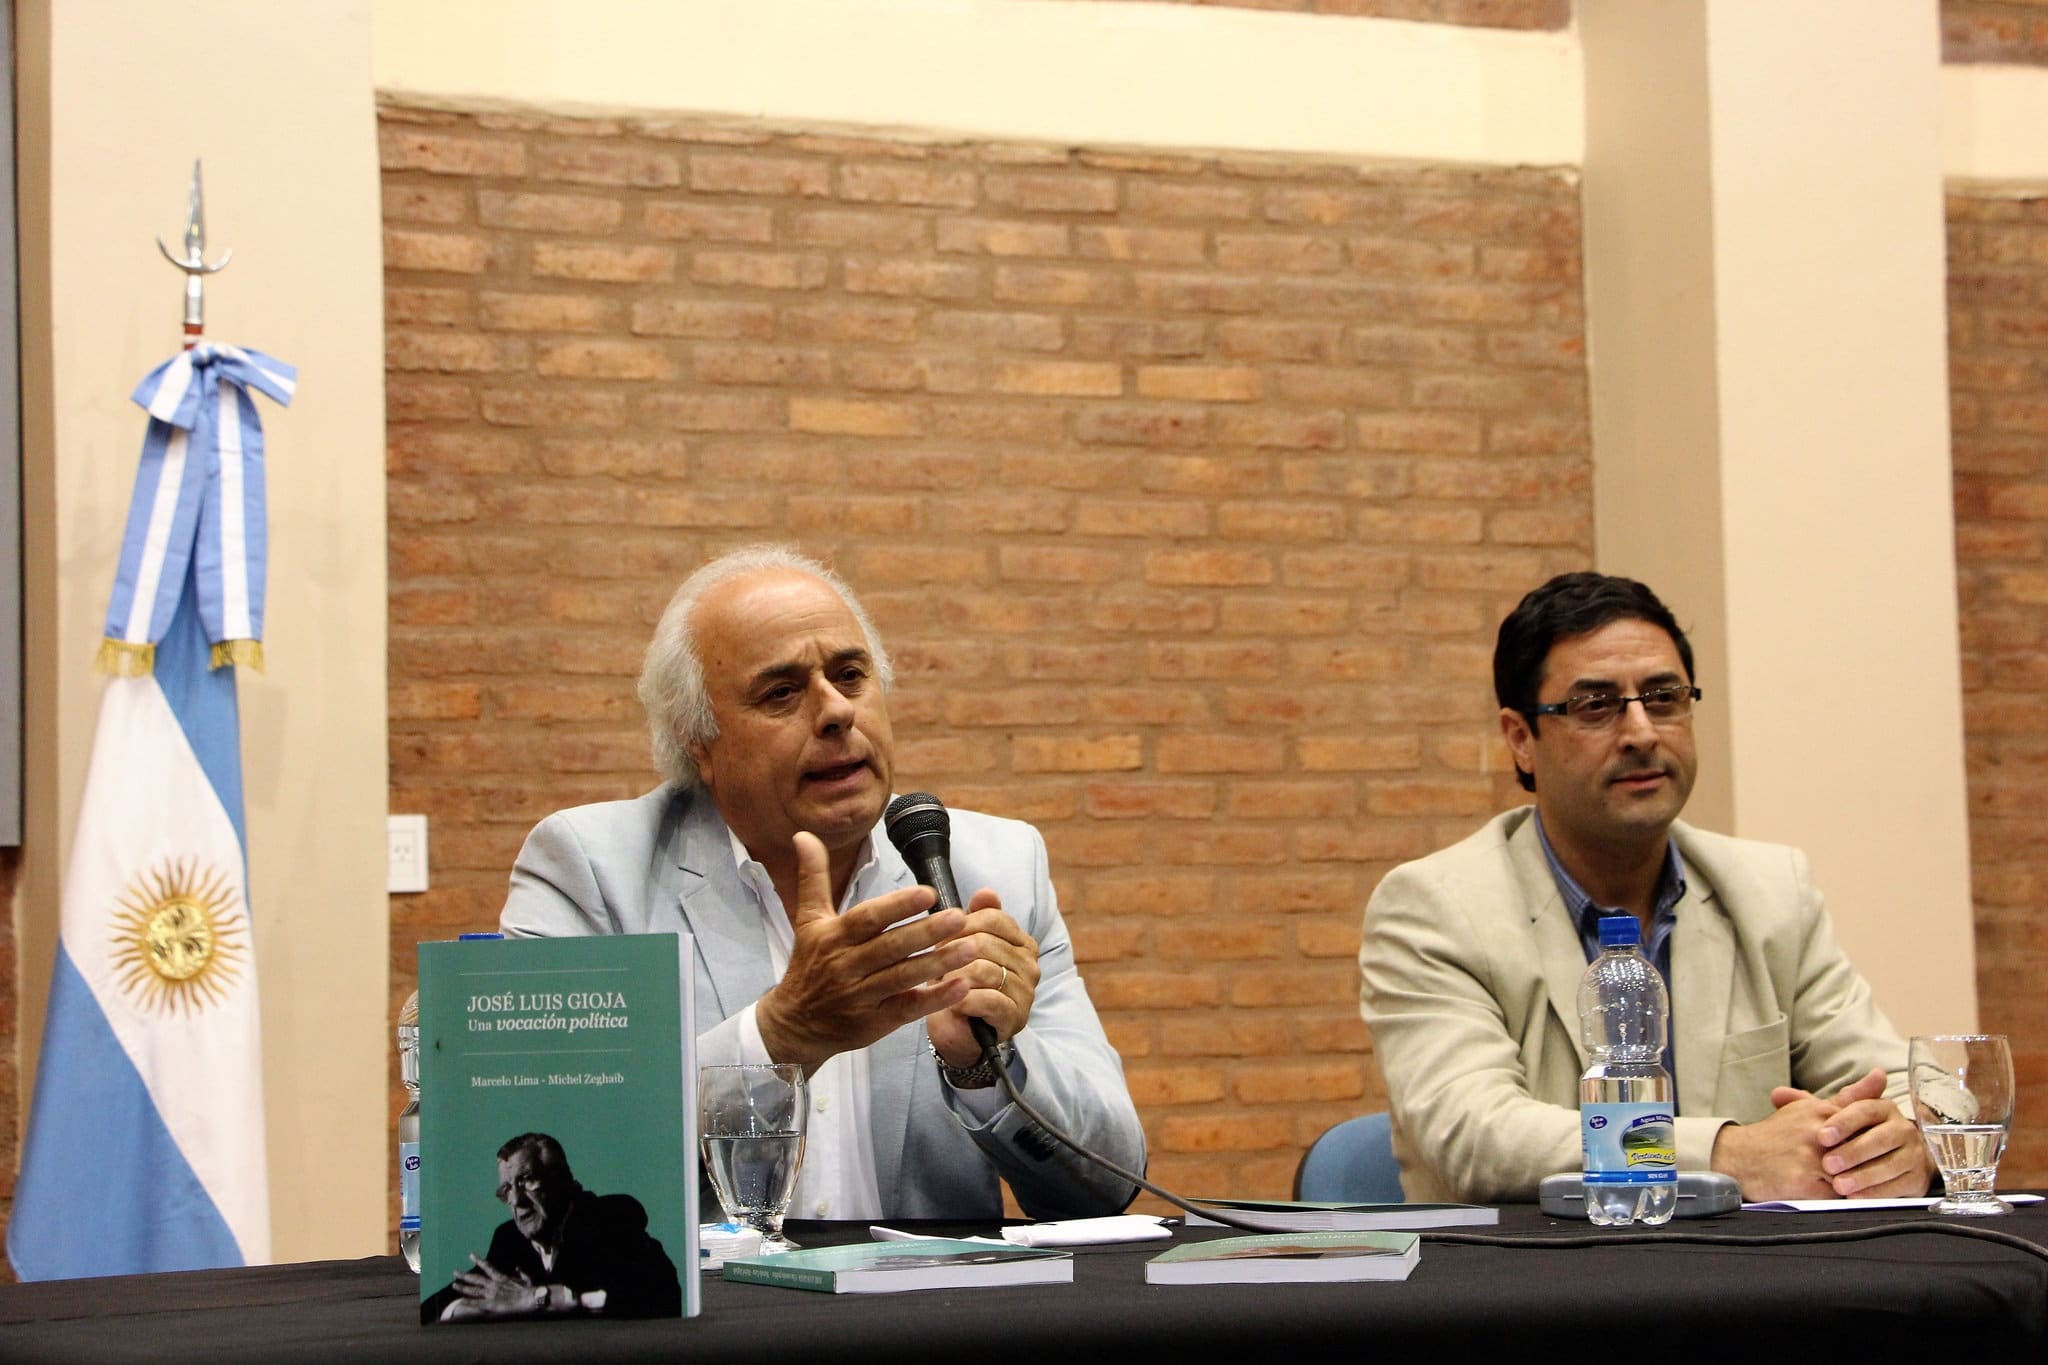 El vicegobernador en la presentación de su libro “José Luis Gioja, una vocación política".  